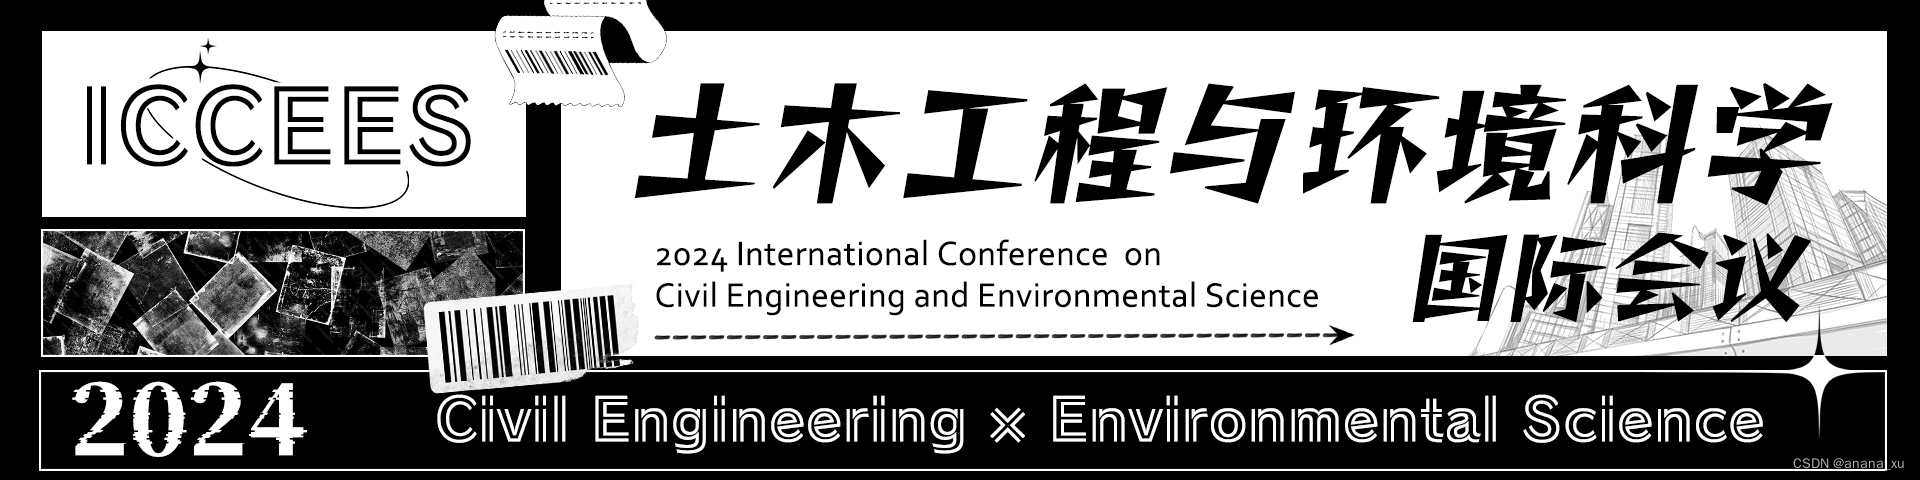 2024年土木工程与环境科学国际会议(ICCEES2024)